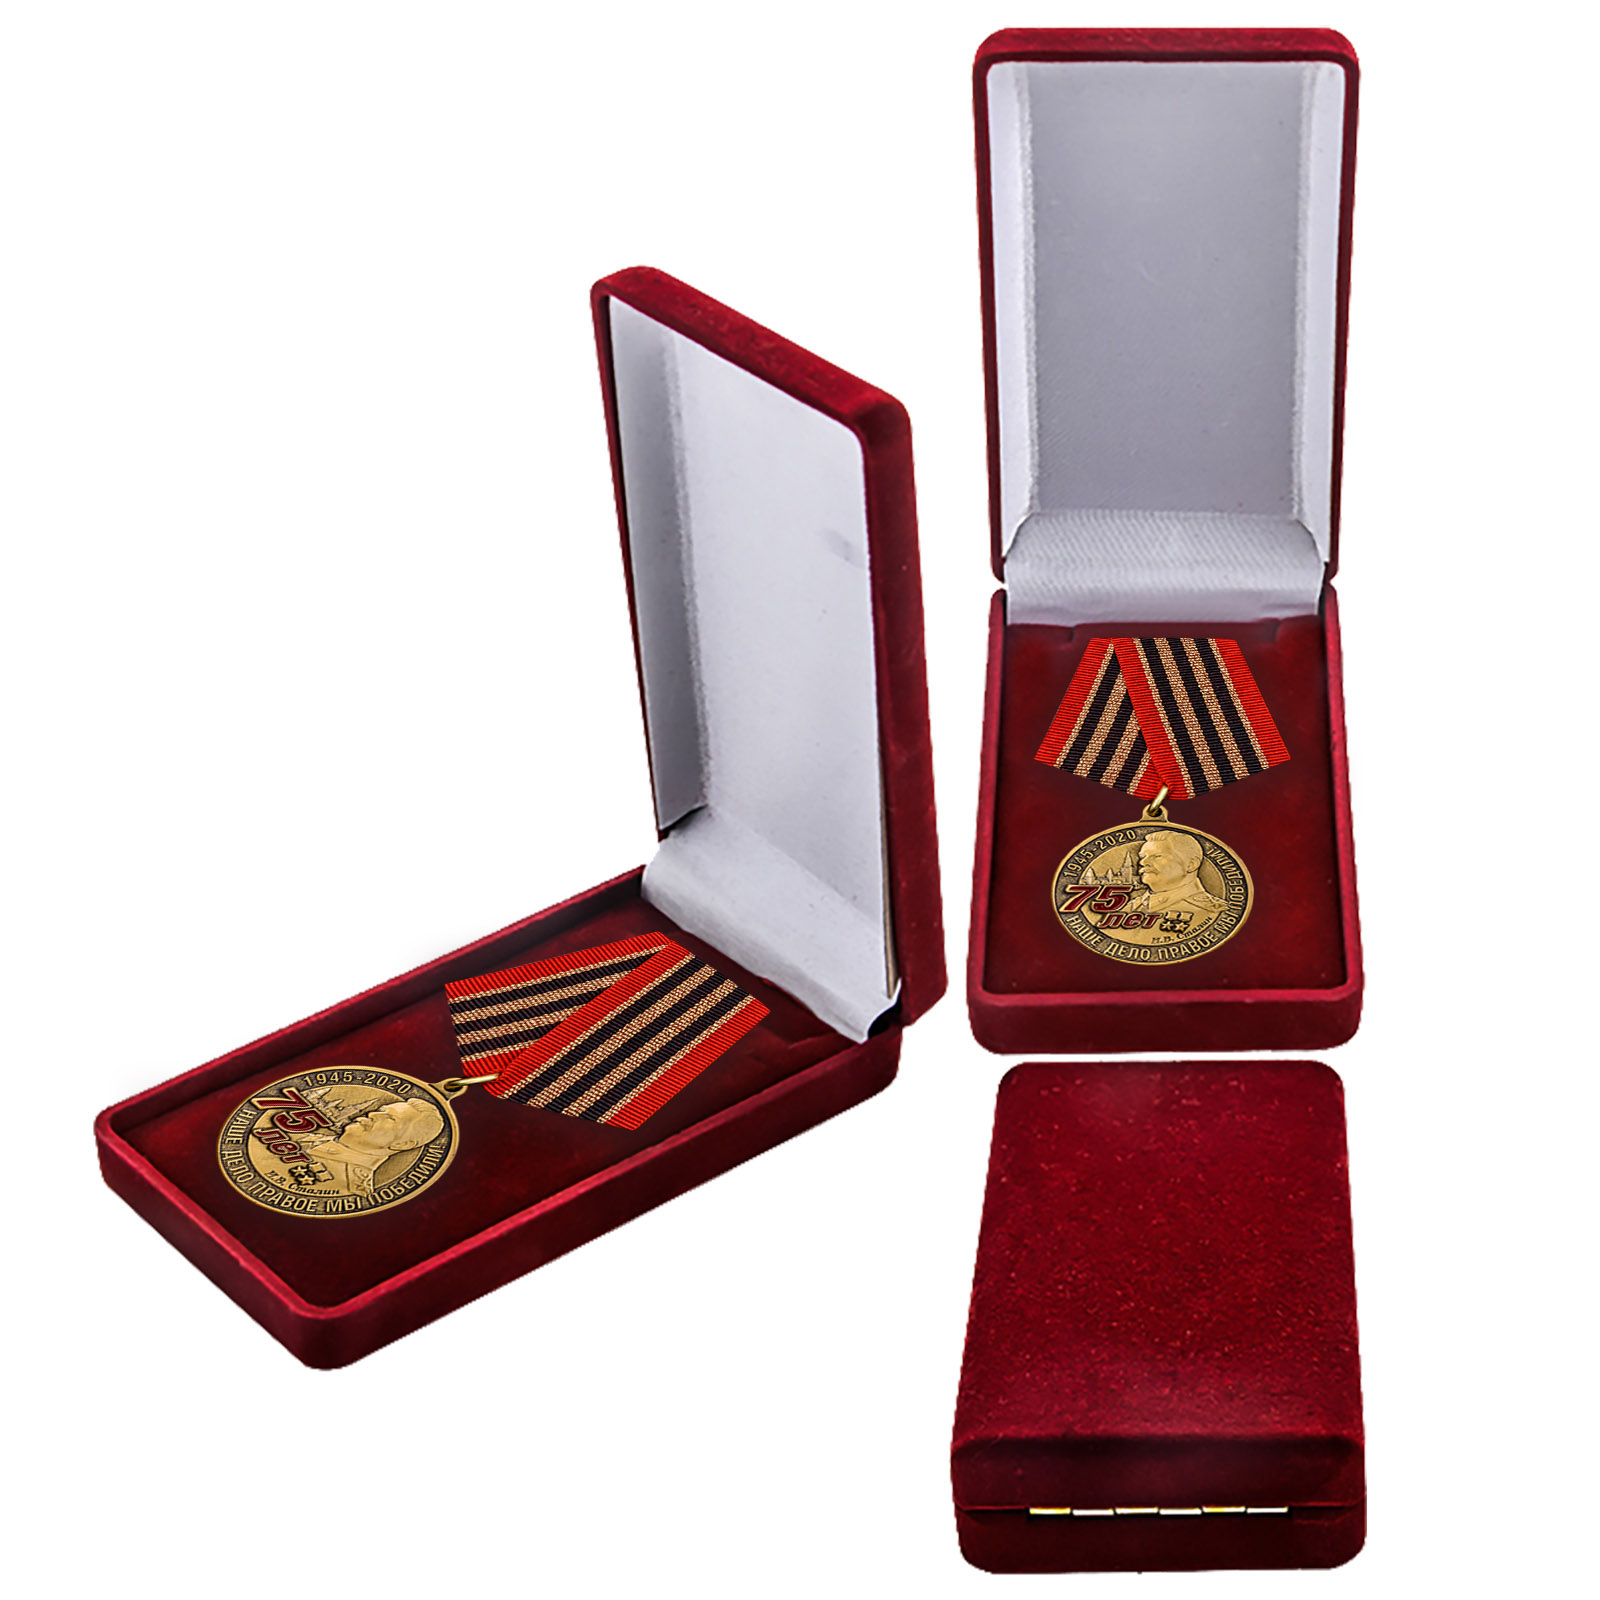 Купить памятную медаль 75 лет со дня Победы в ВОВ в подарок выгодно